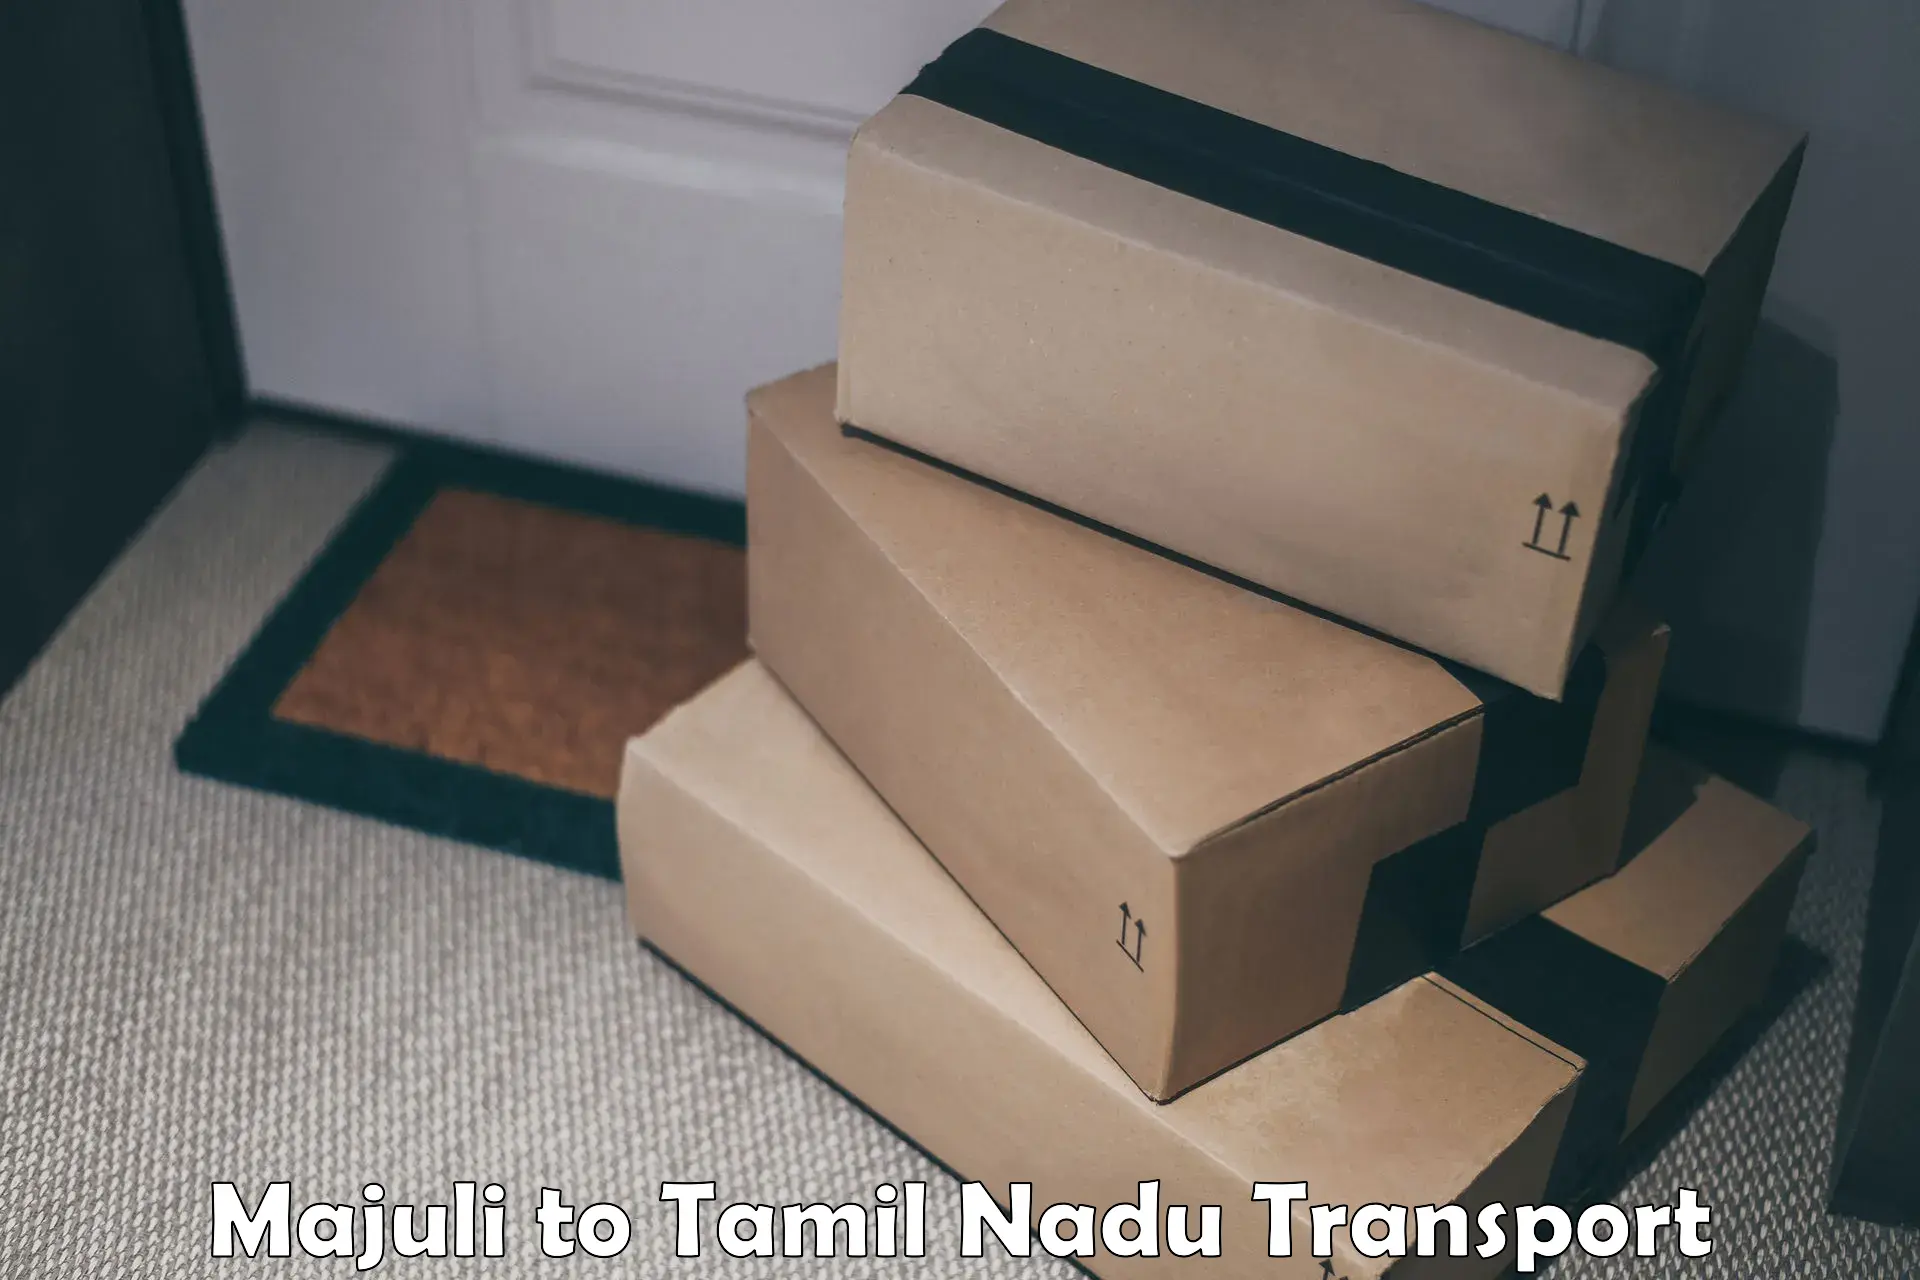 Furniture transport service in Majuli to Tamil Nadu